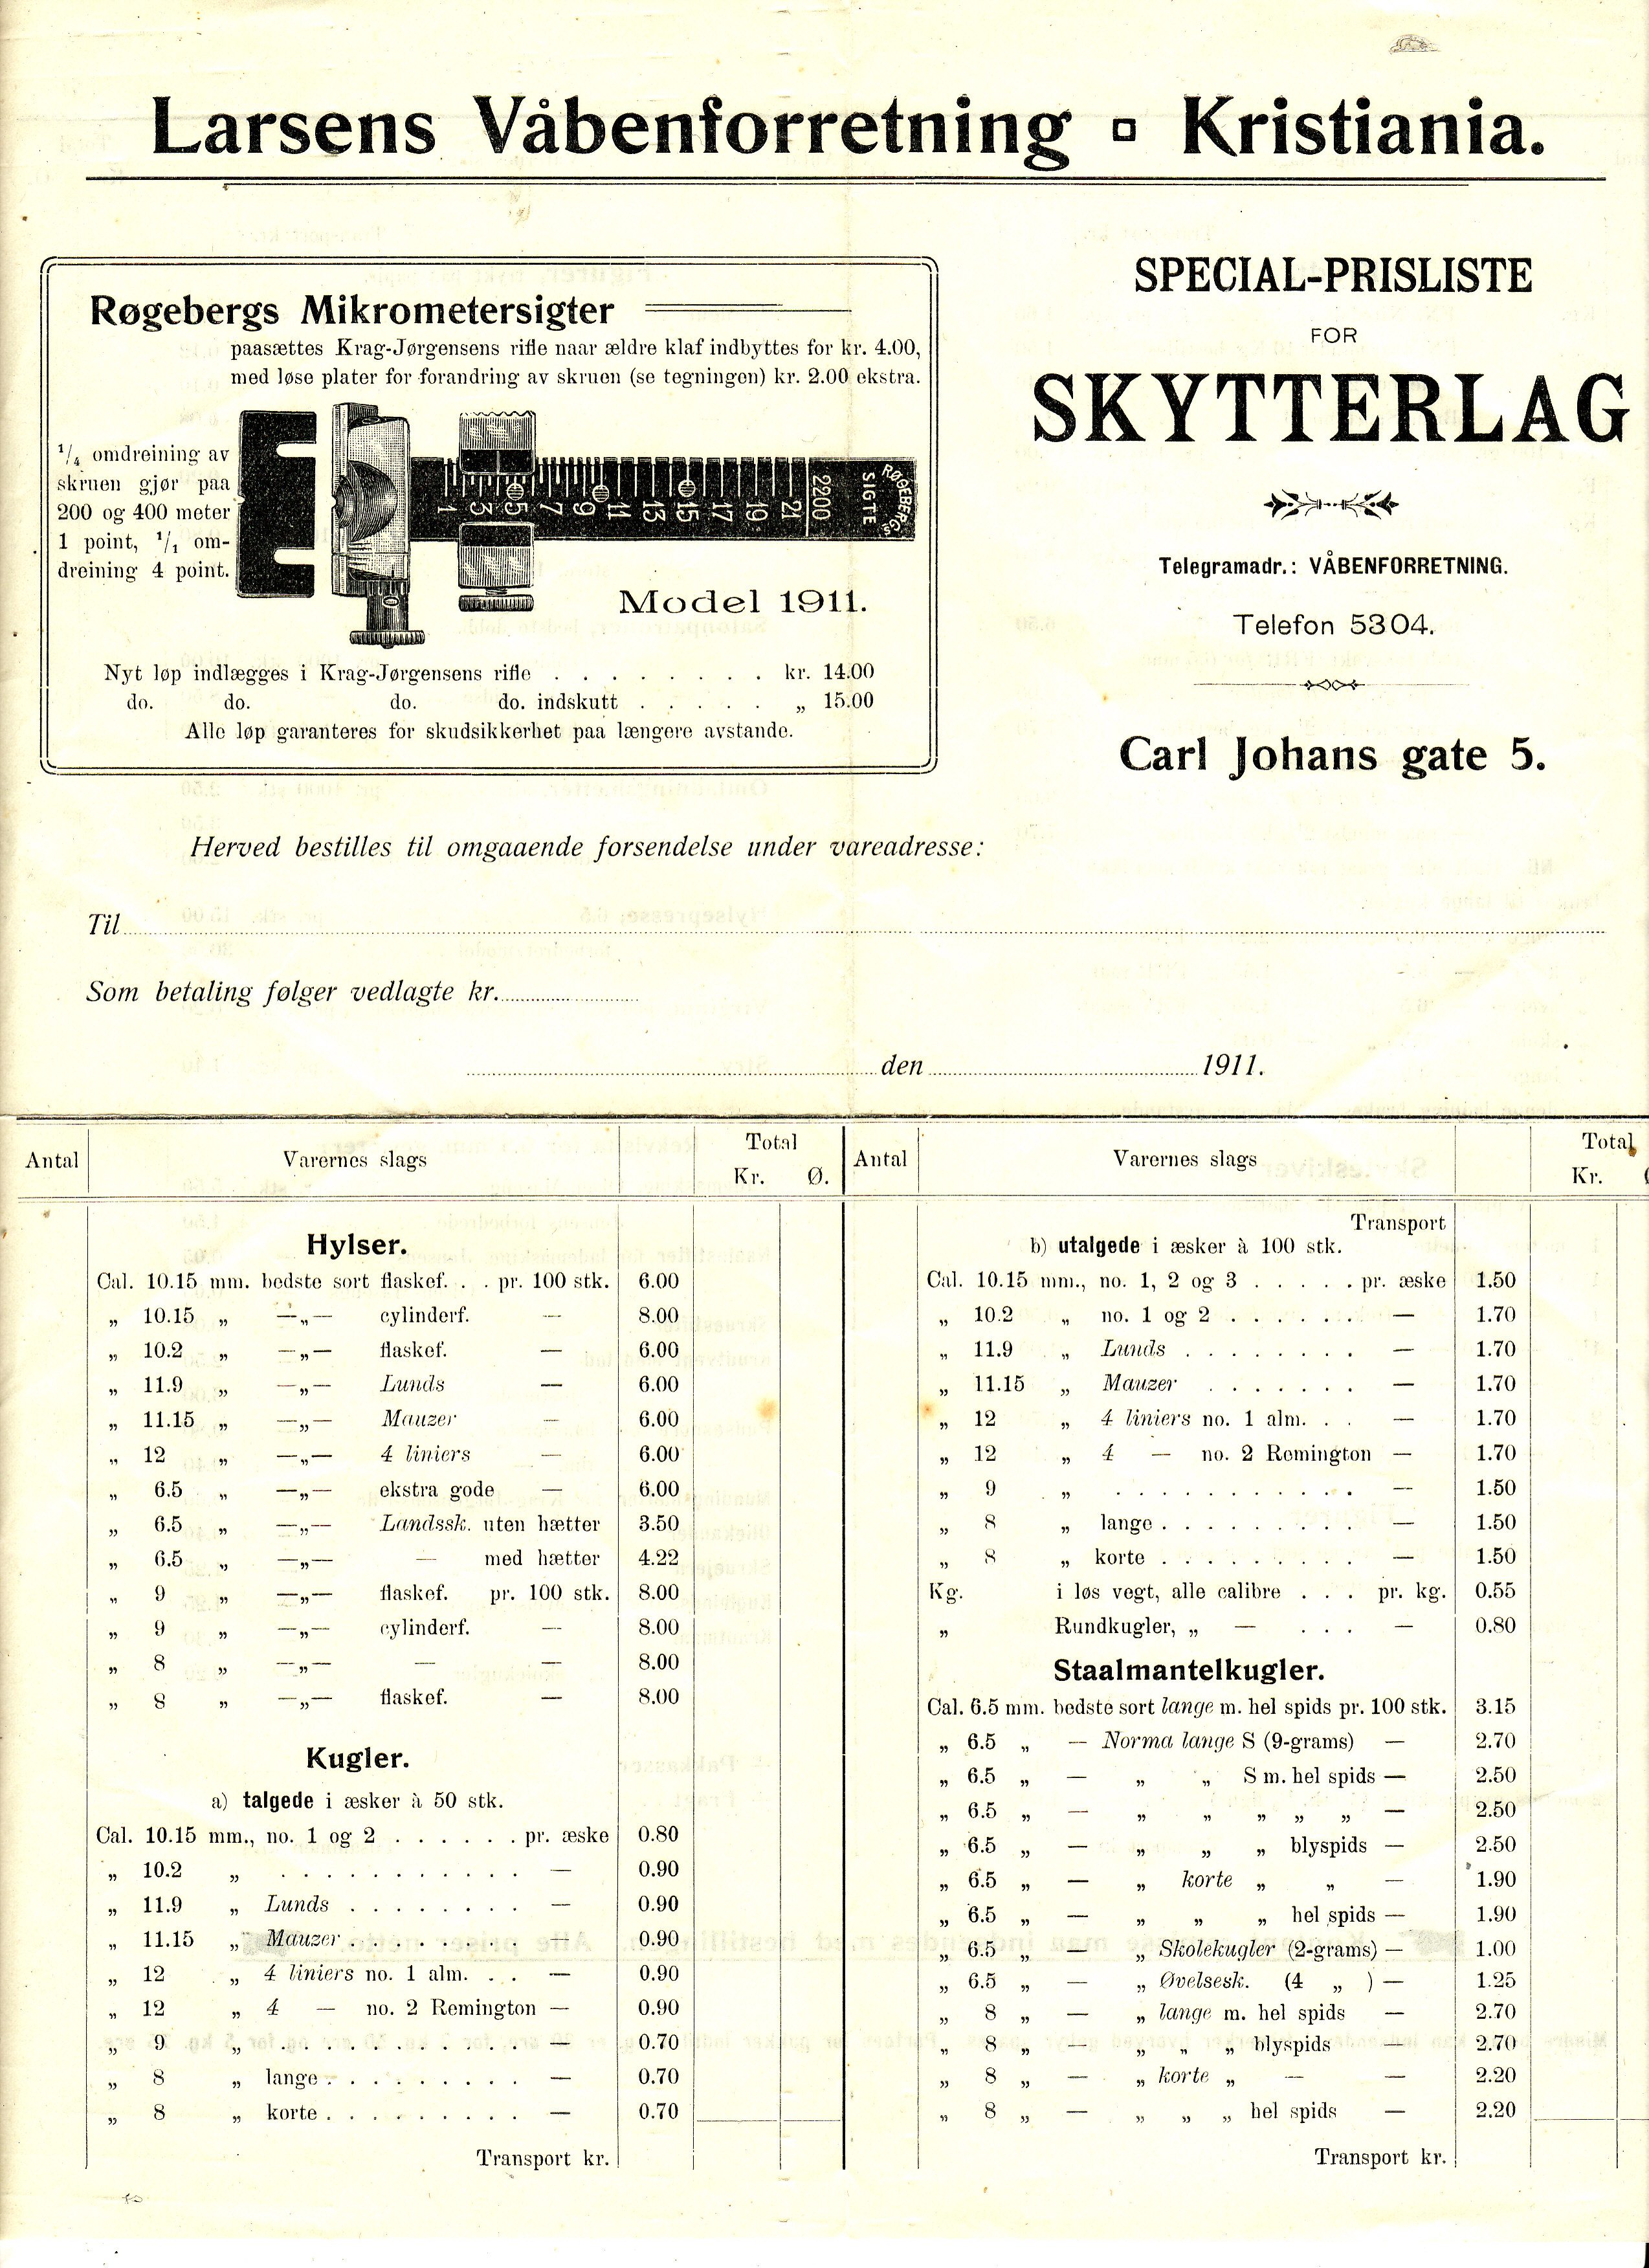 ./guns/utstyr/bilder/Utstyr-Krag-Mikrometersikte-Rogeberg-1911-1.jpg